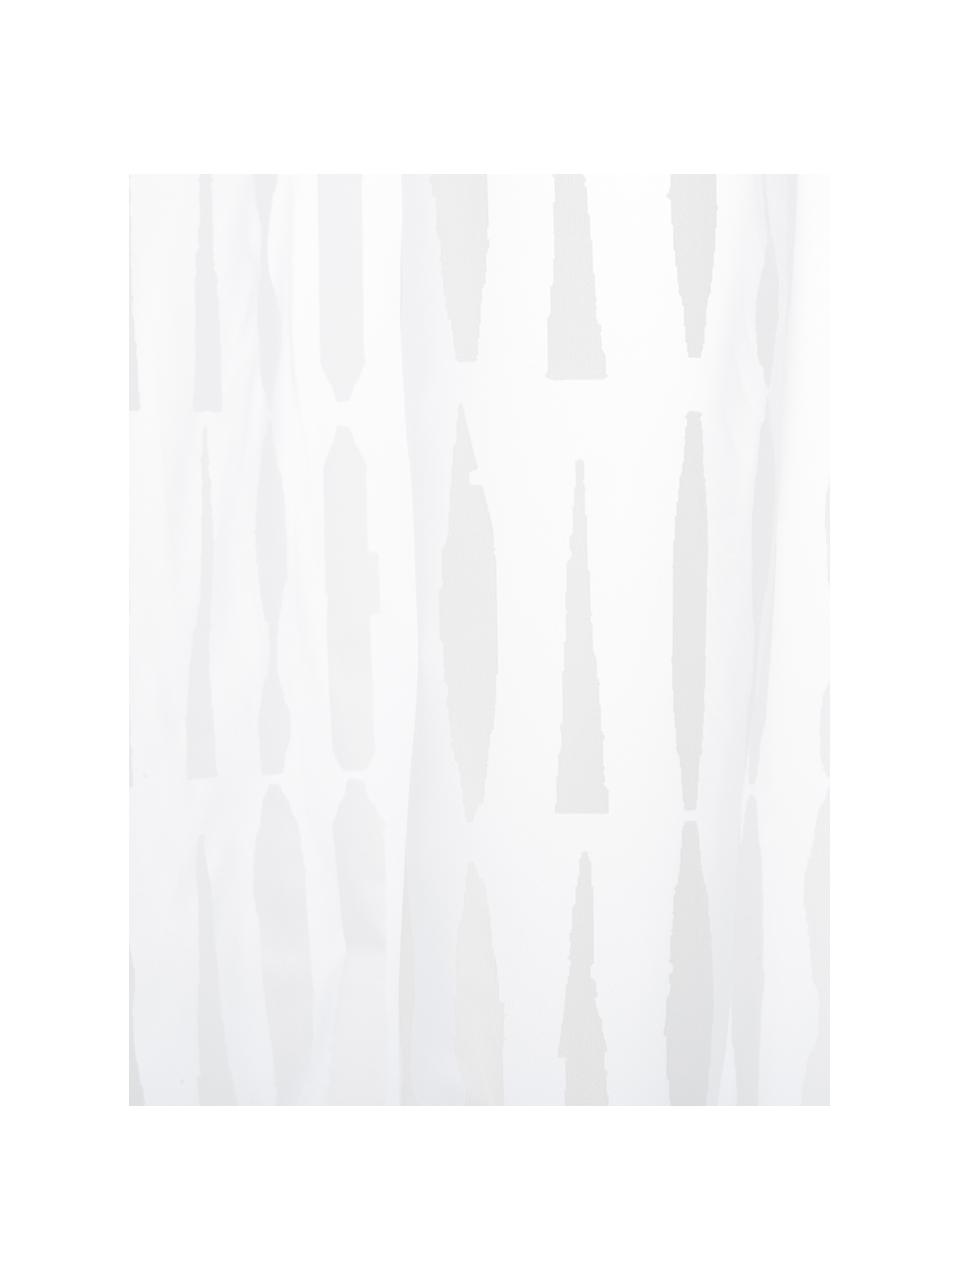 Duschvorhang Zora in Transparent/Weiß, Öko-Kunststoff (PEVA), frei von PVC
Wasserdicht, Transparent, Weiß, B 180 x L 200 cm